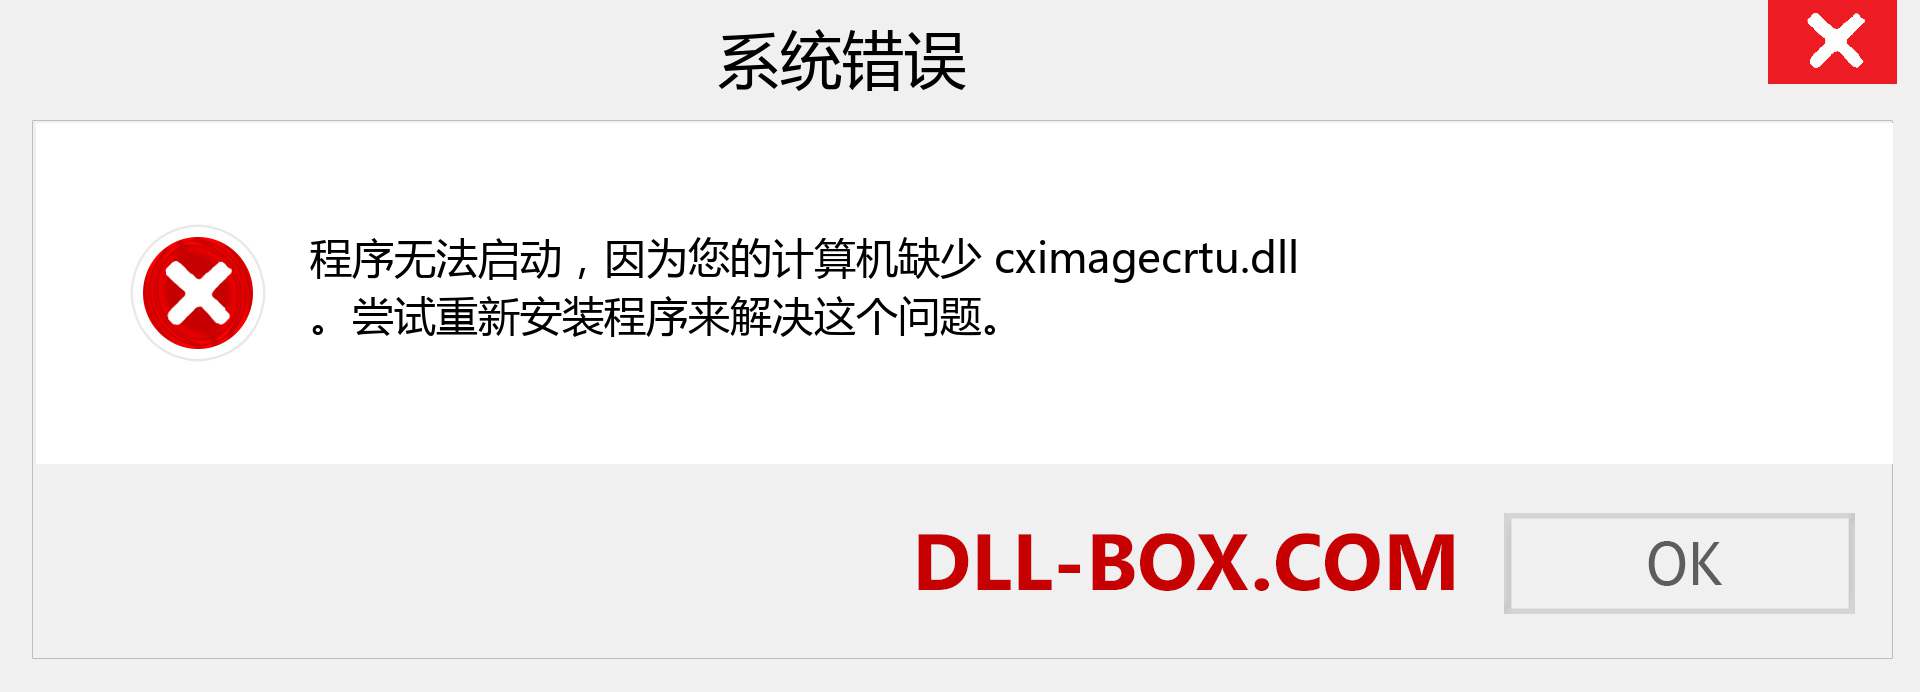 cximagecrtu.dll 文件丢失？。 适用于 Windows 7、8、10 的下载 - 修复 Windows、照片、图像上的 cximagecrtu dll 丢失错误